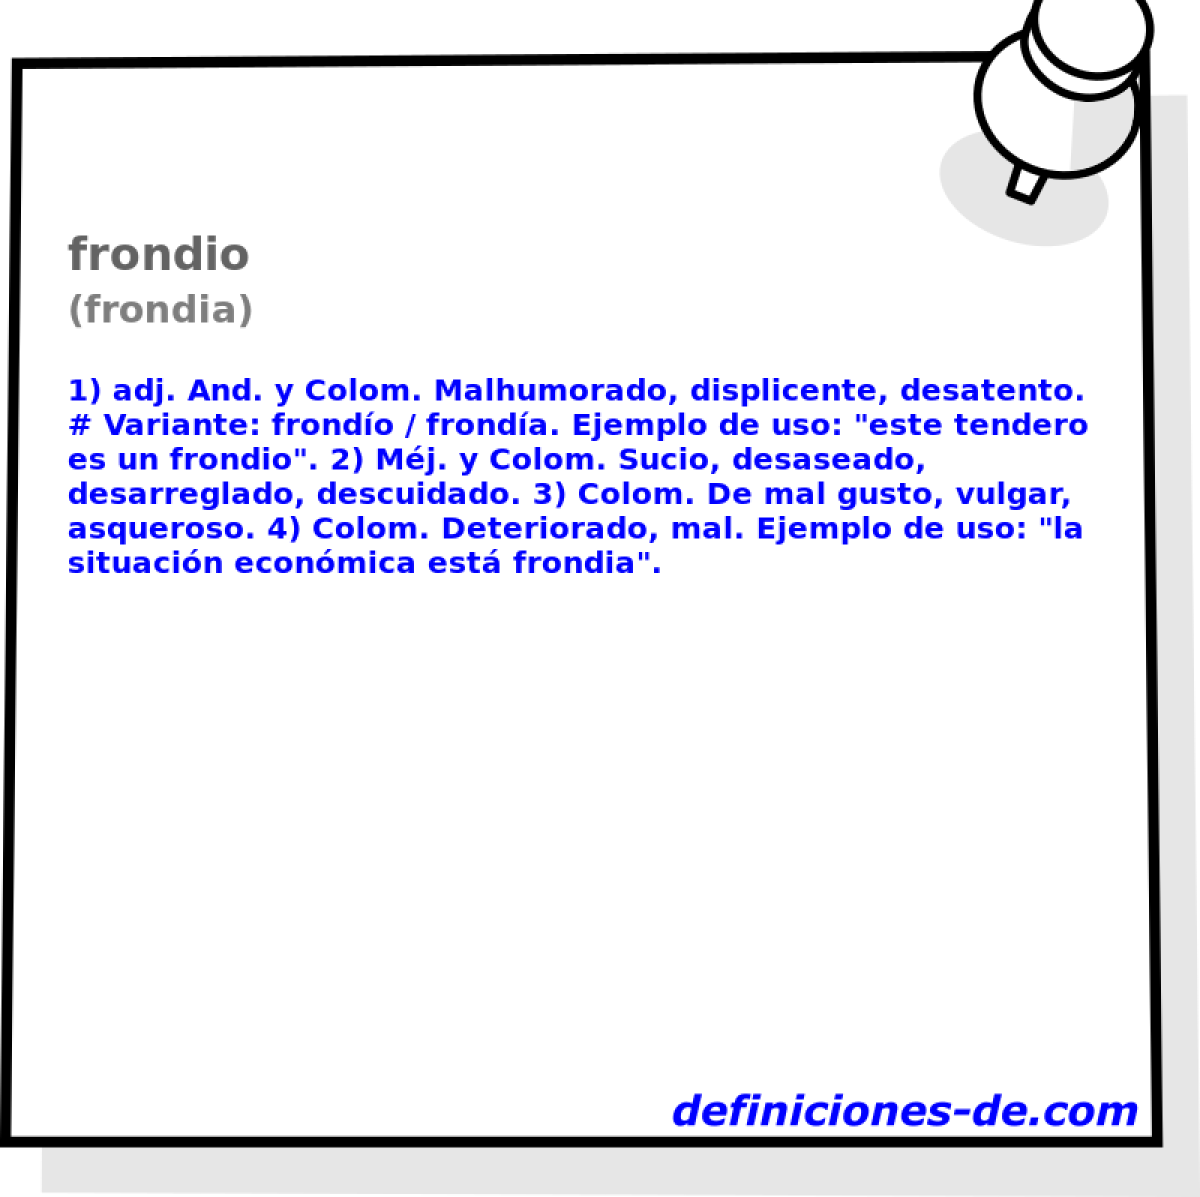 frondio (frondia)